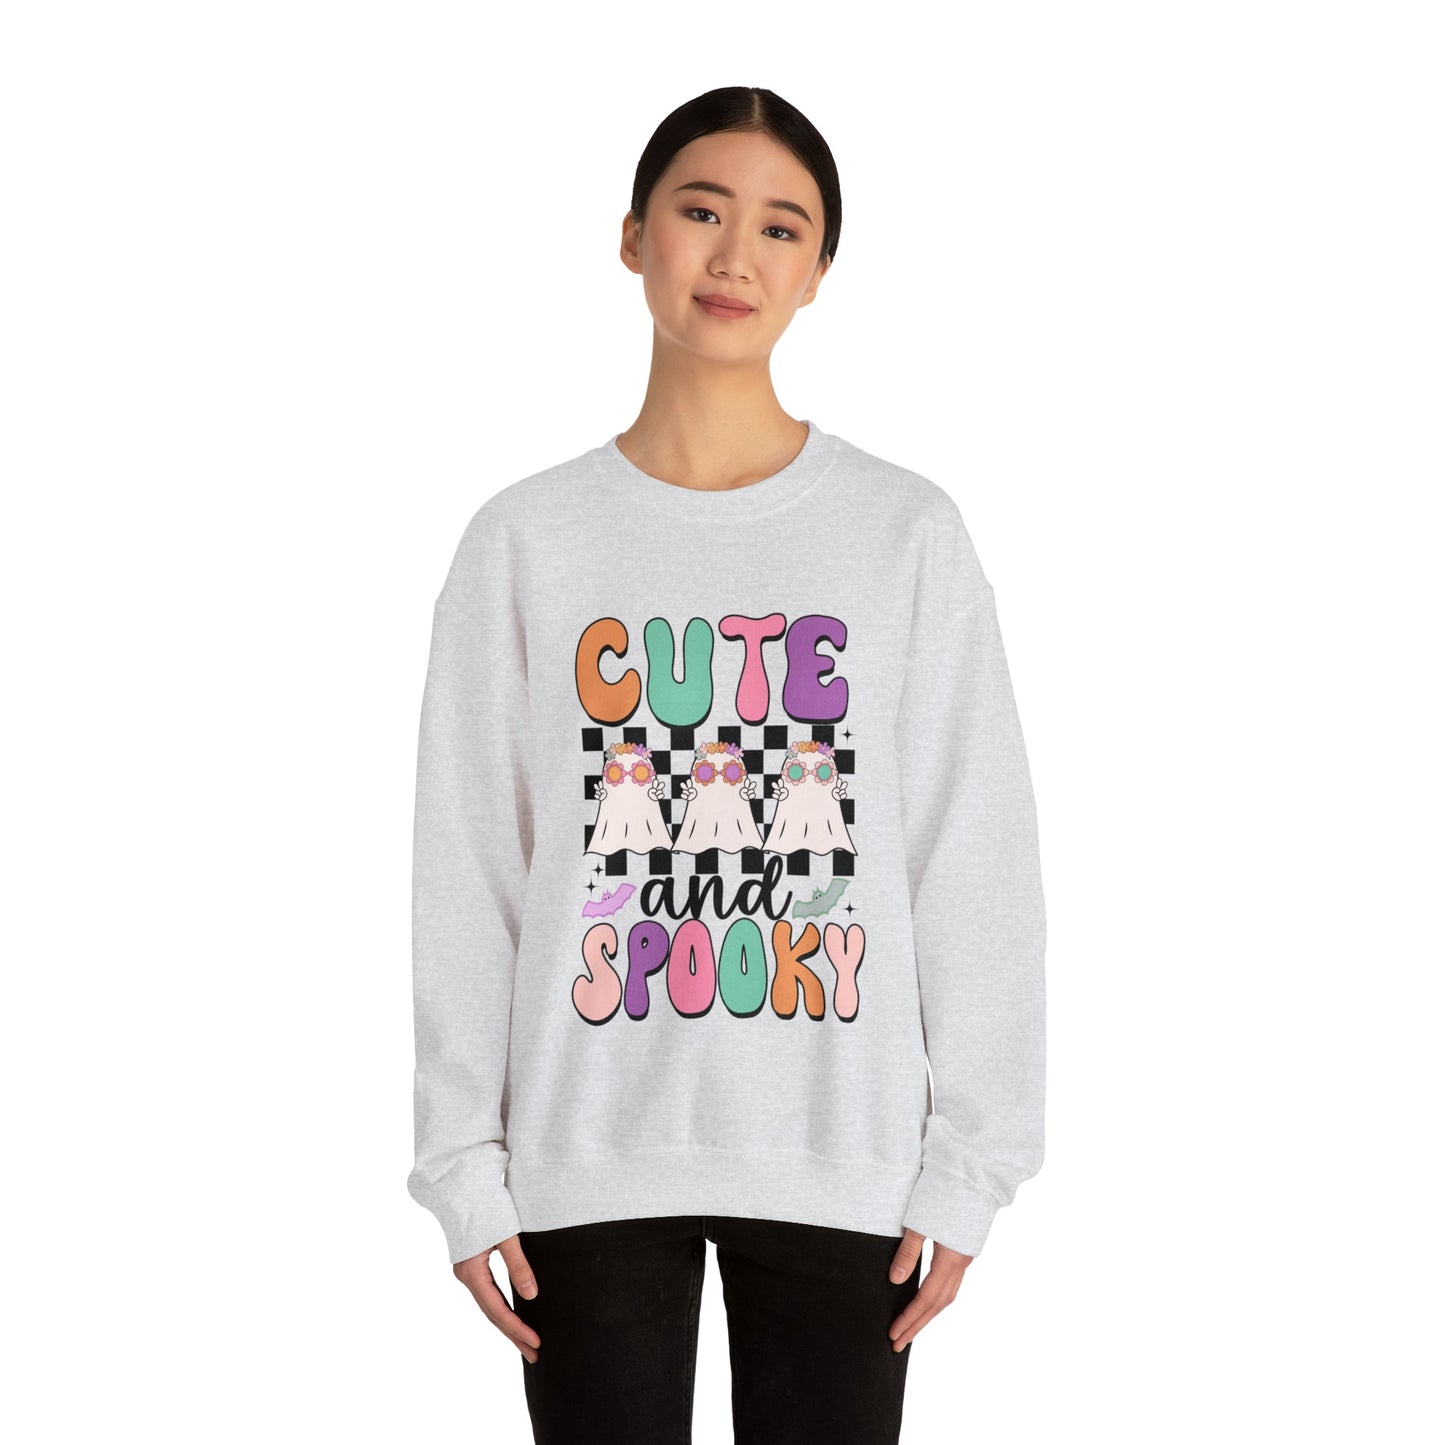 Cute & Spooky Sweatshirt - Designs by Lauren Ann